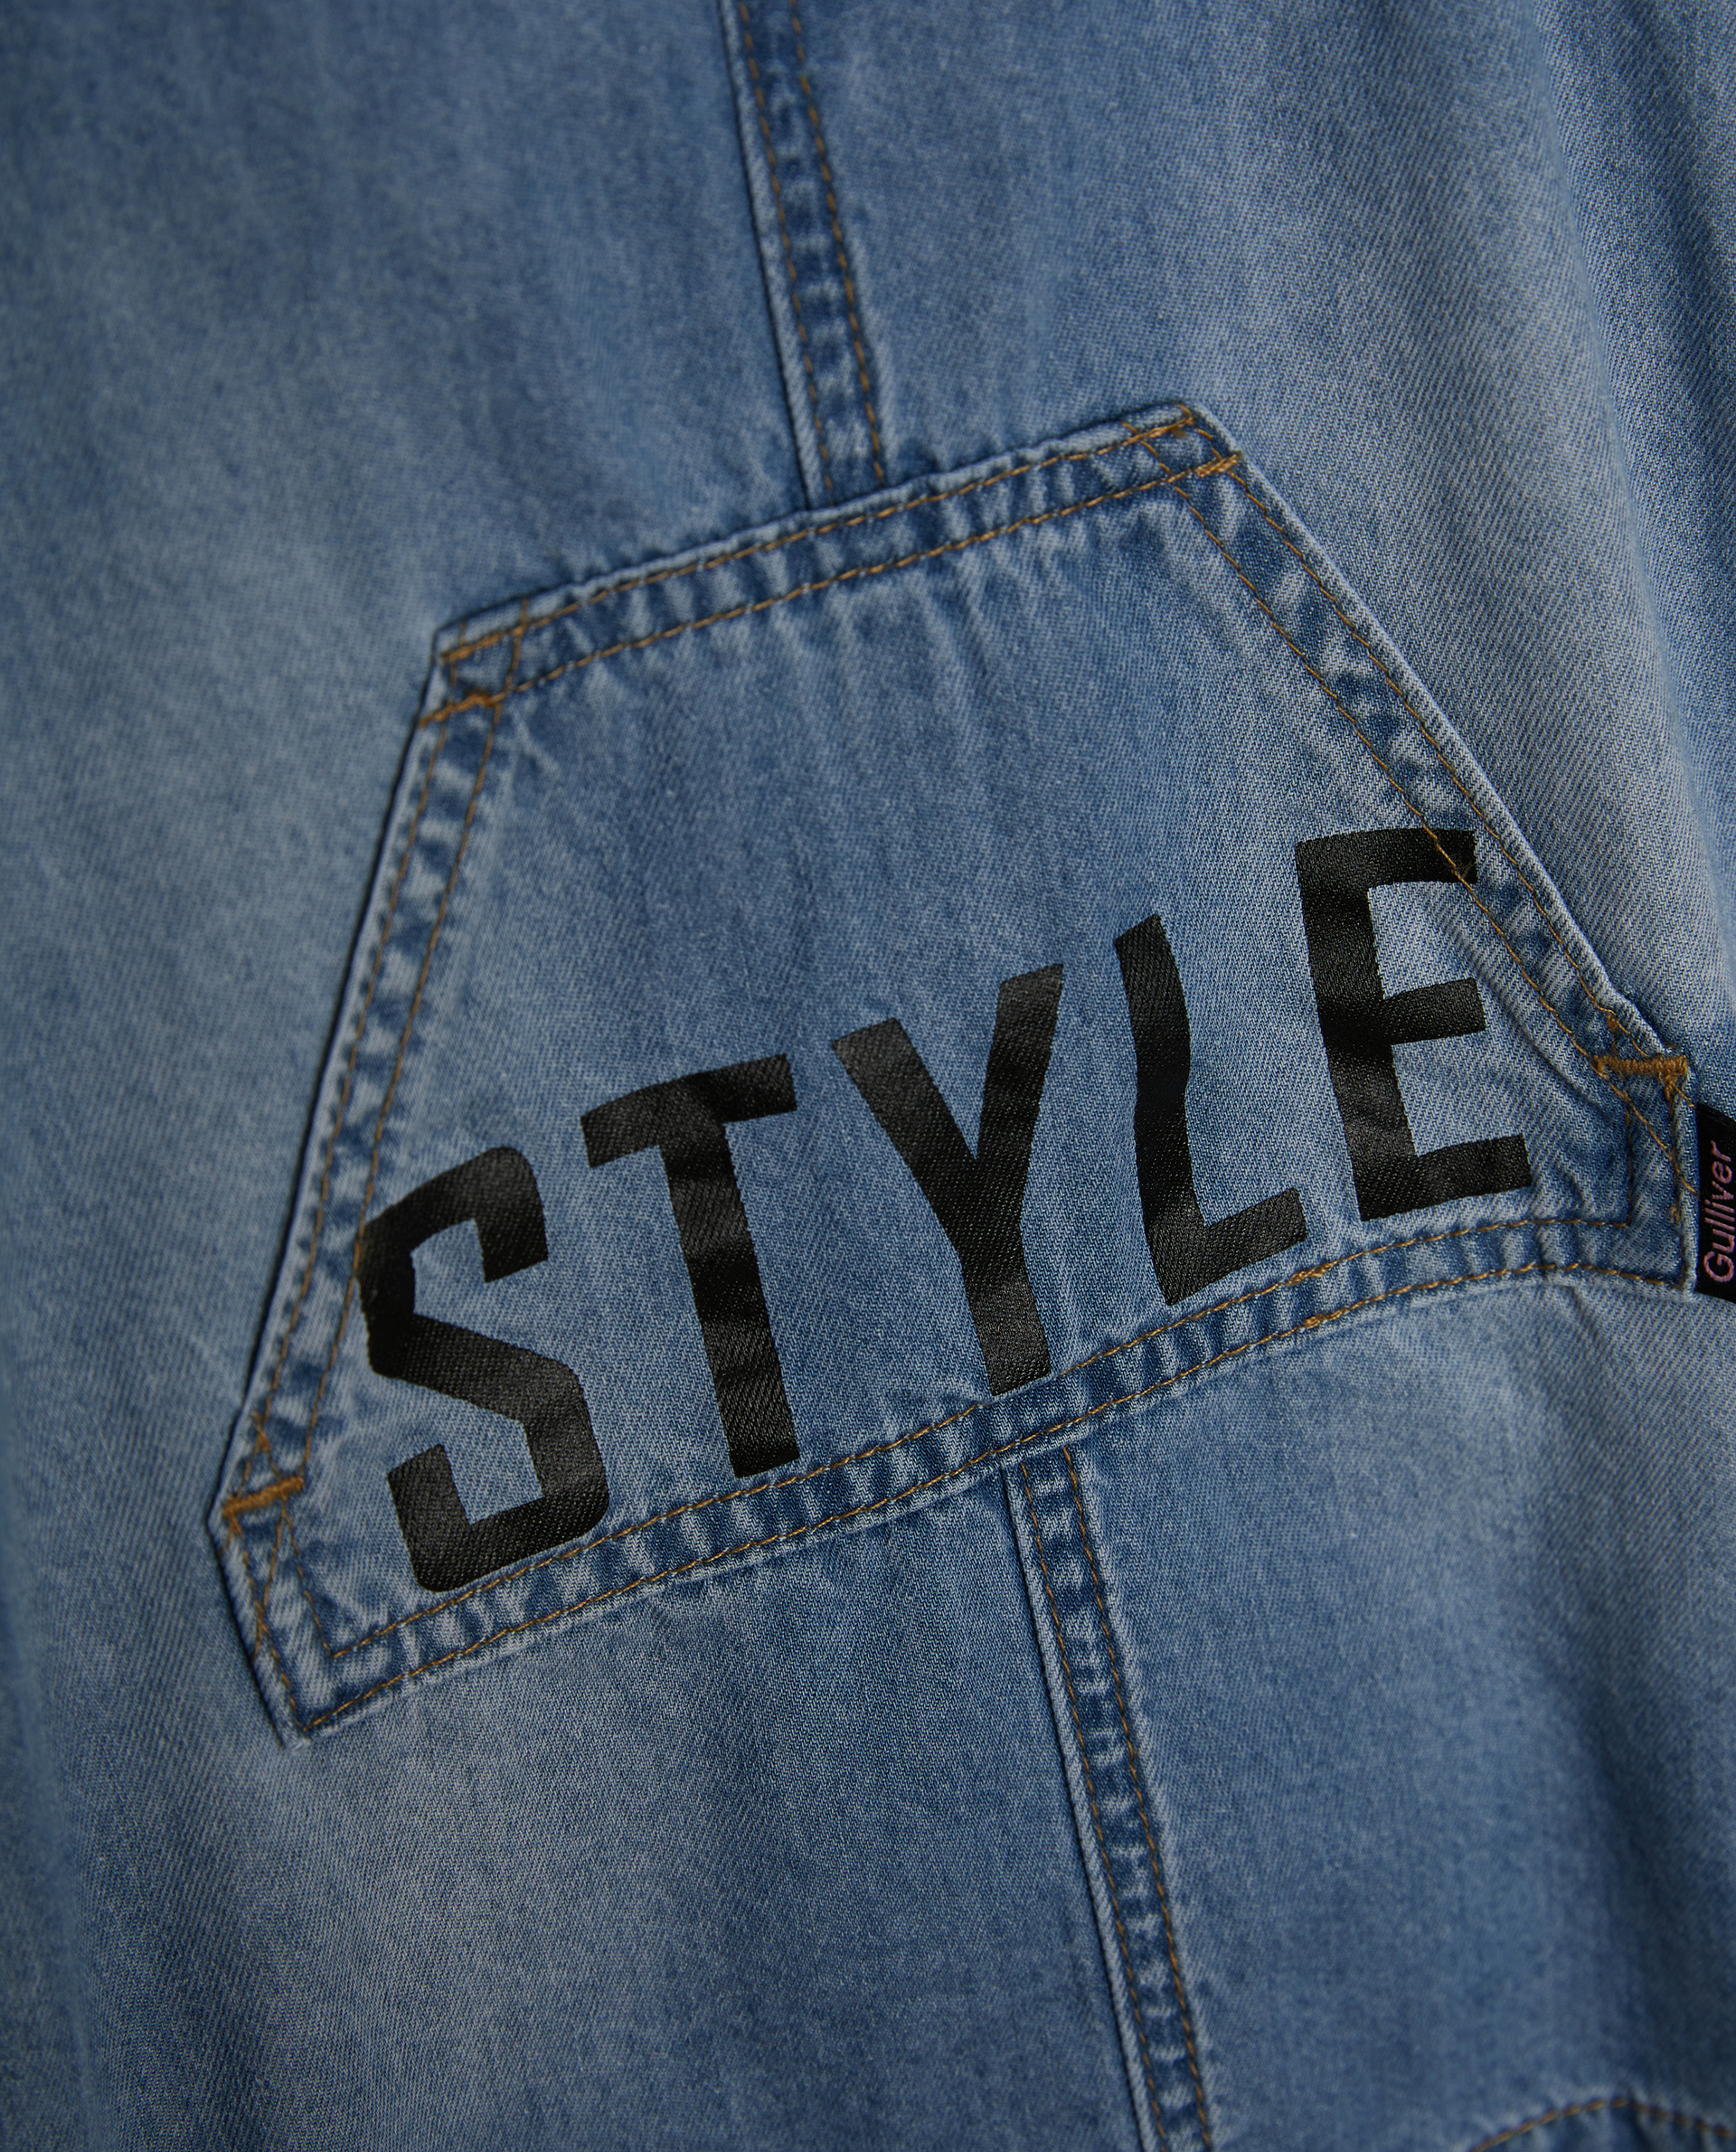 Сарафан джинсовый с карманом Gulliver 12131GBC2501, размер 74, цвет голубой мини - фото 2